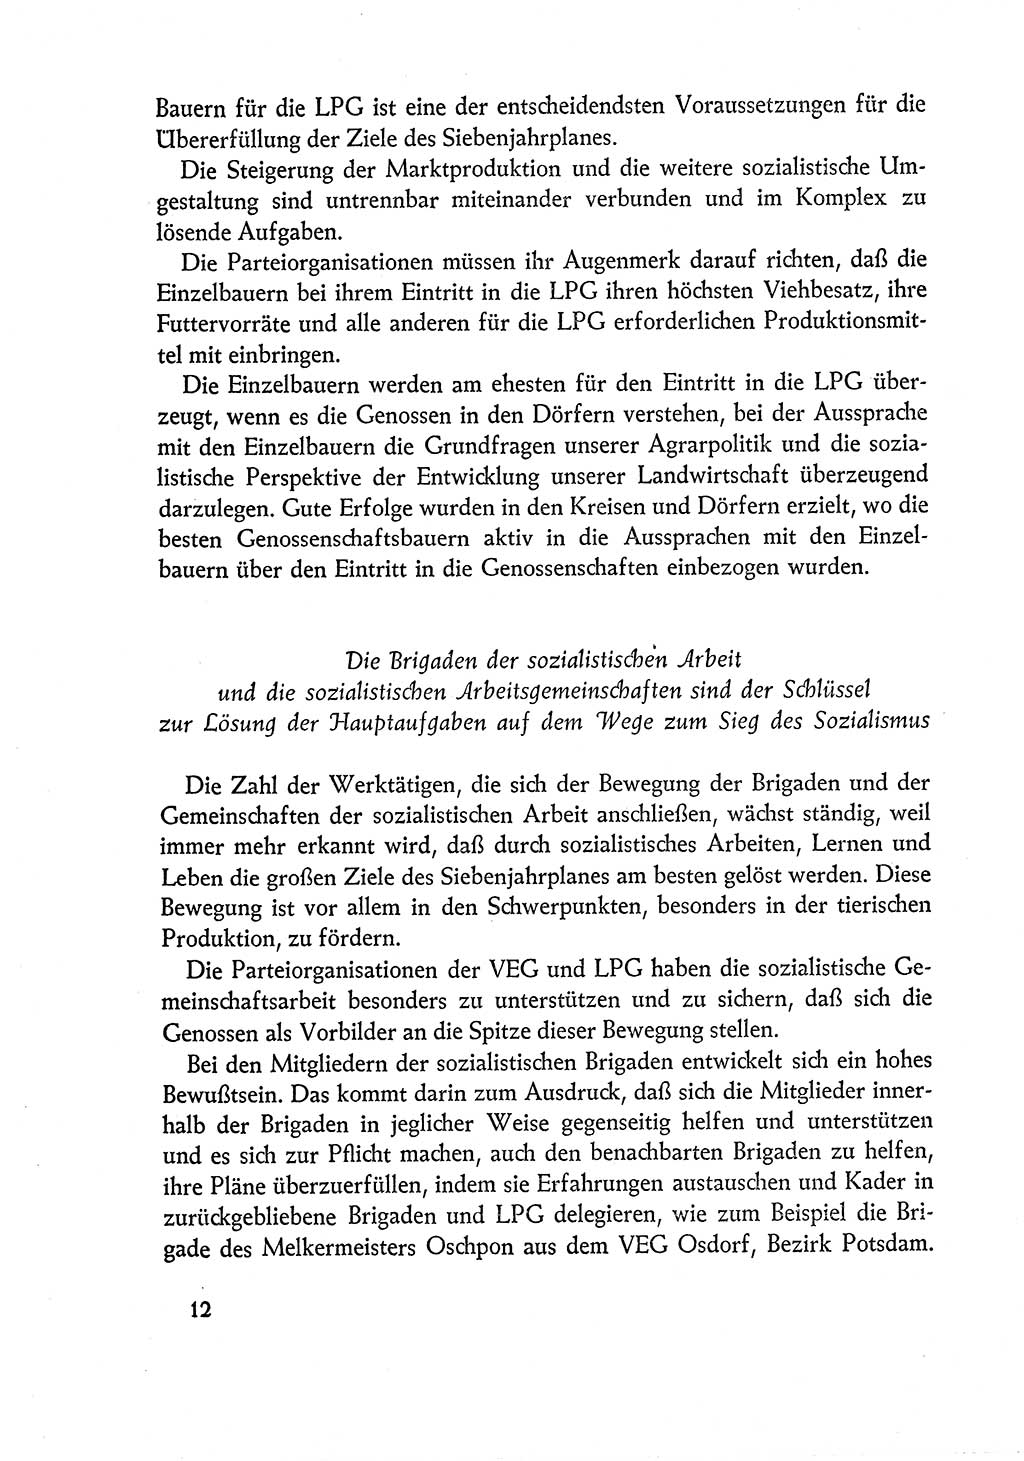 Dokumente der Sozialistischen Einheitspartei Deutschlands (SED) [Deutsche Demokratische Republik (DDR)] 1960-1961, Seite 12 (Dok. SED DDR 1960-1961, S. 12)